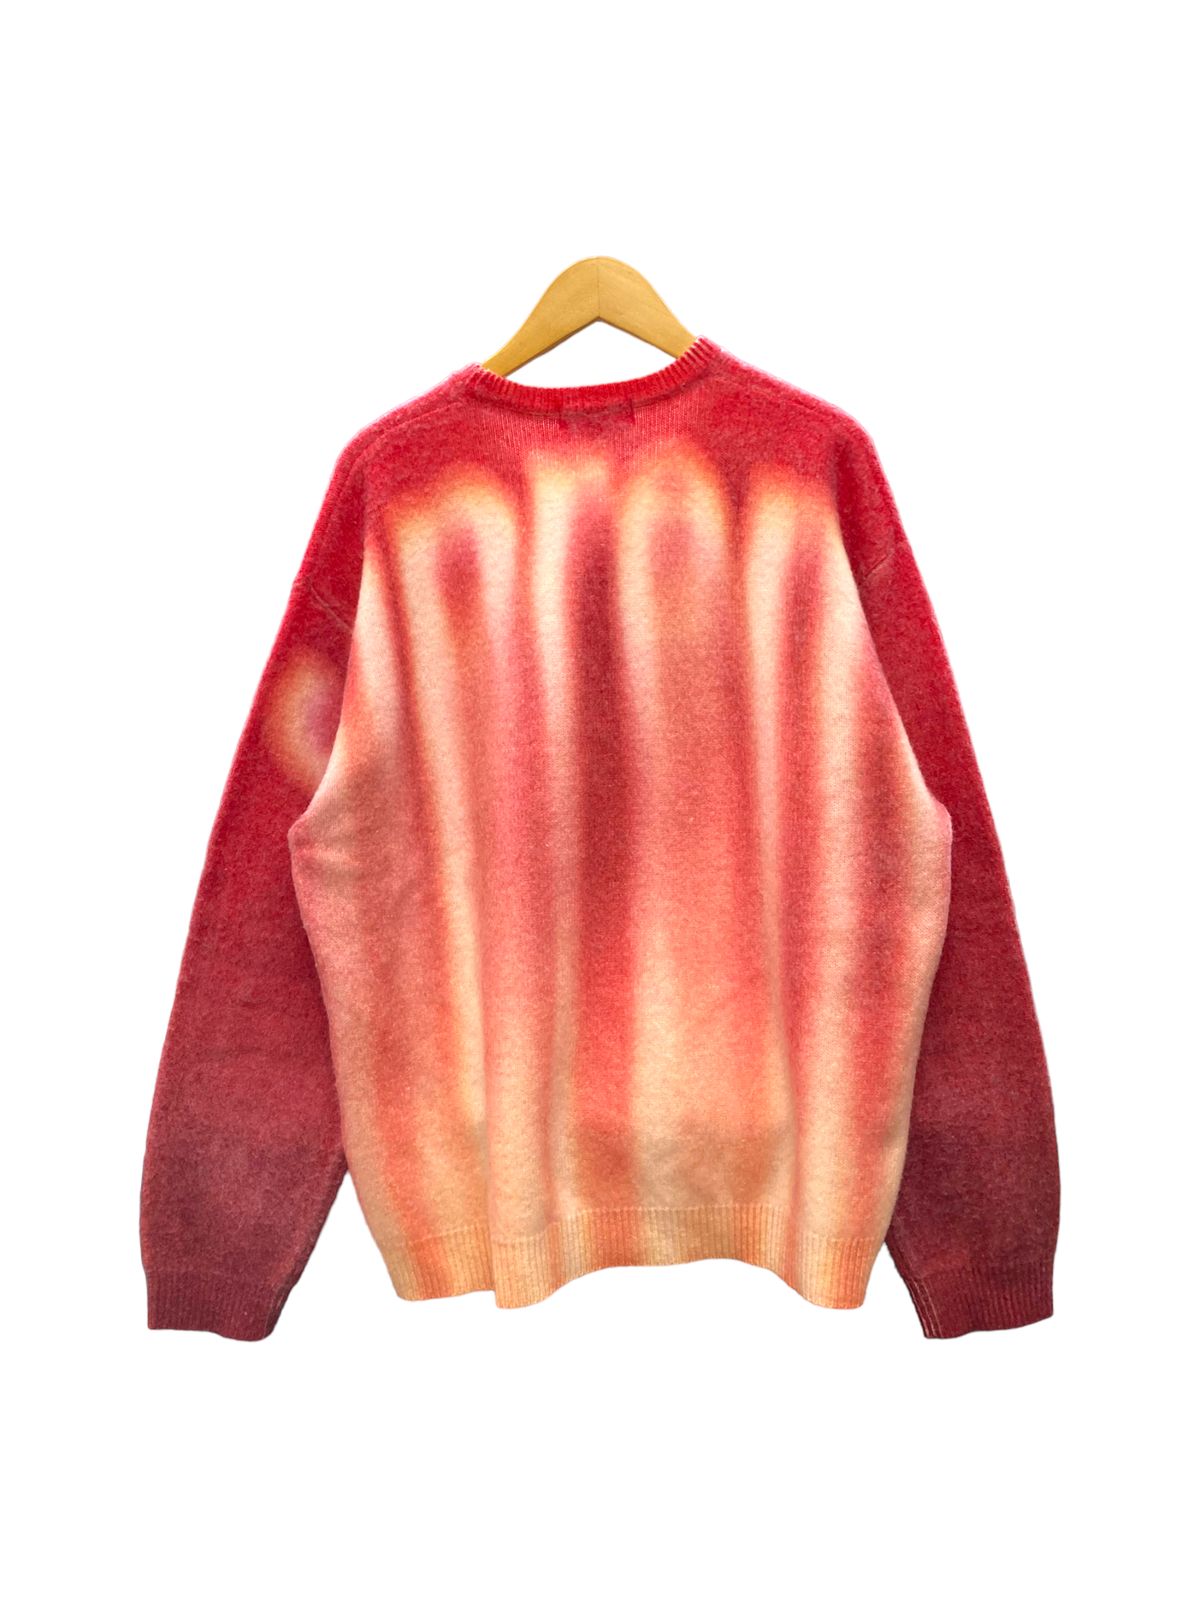 Supreme (シュプリーム) Blurred Logo Sweater ブラードロゴセーター ...